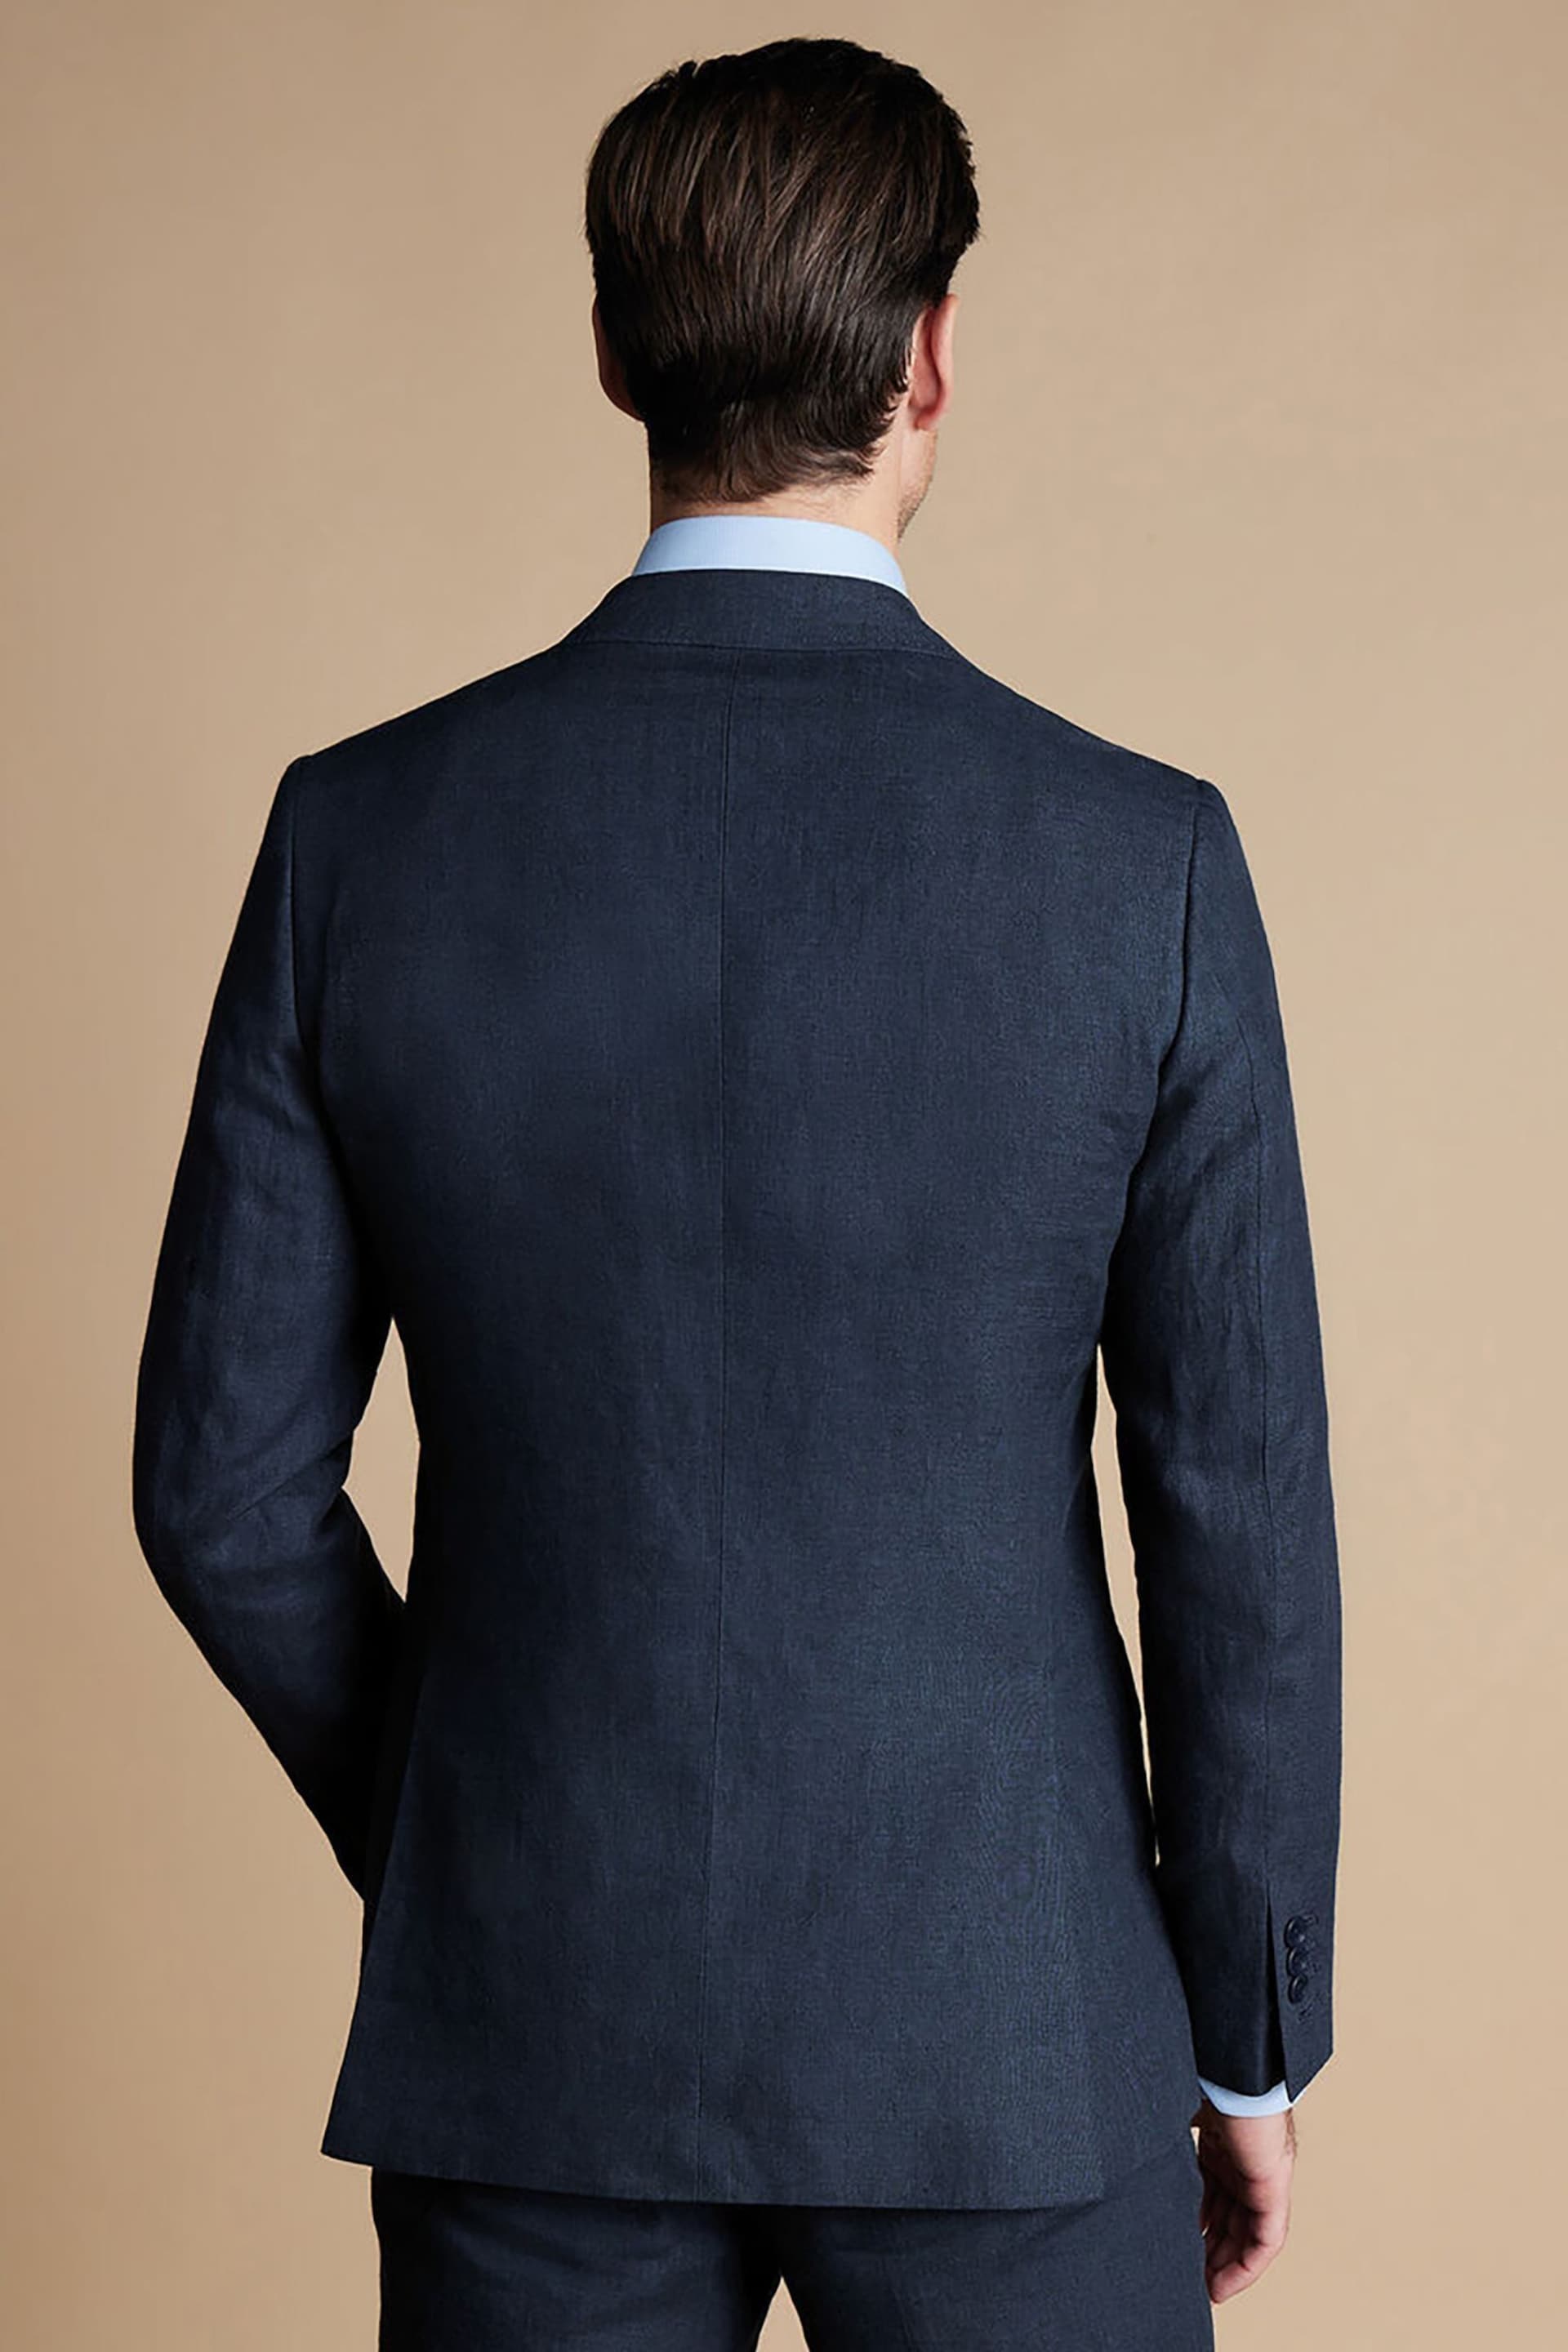 Charles Tyrwhitt Blue Linen Slim Fit Jacket - Image 2 of 5